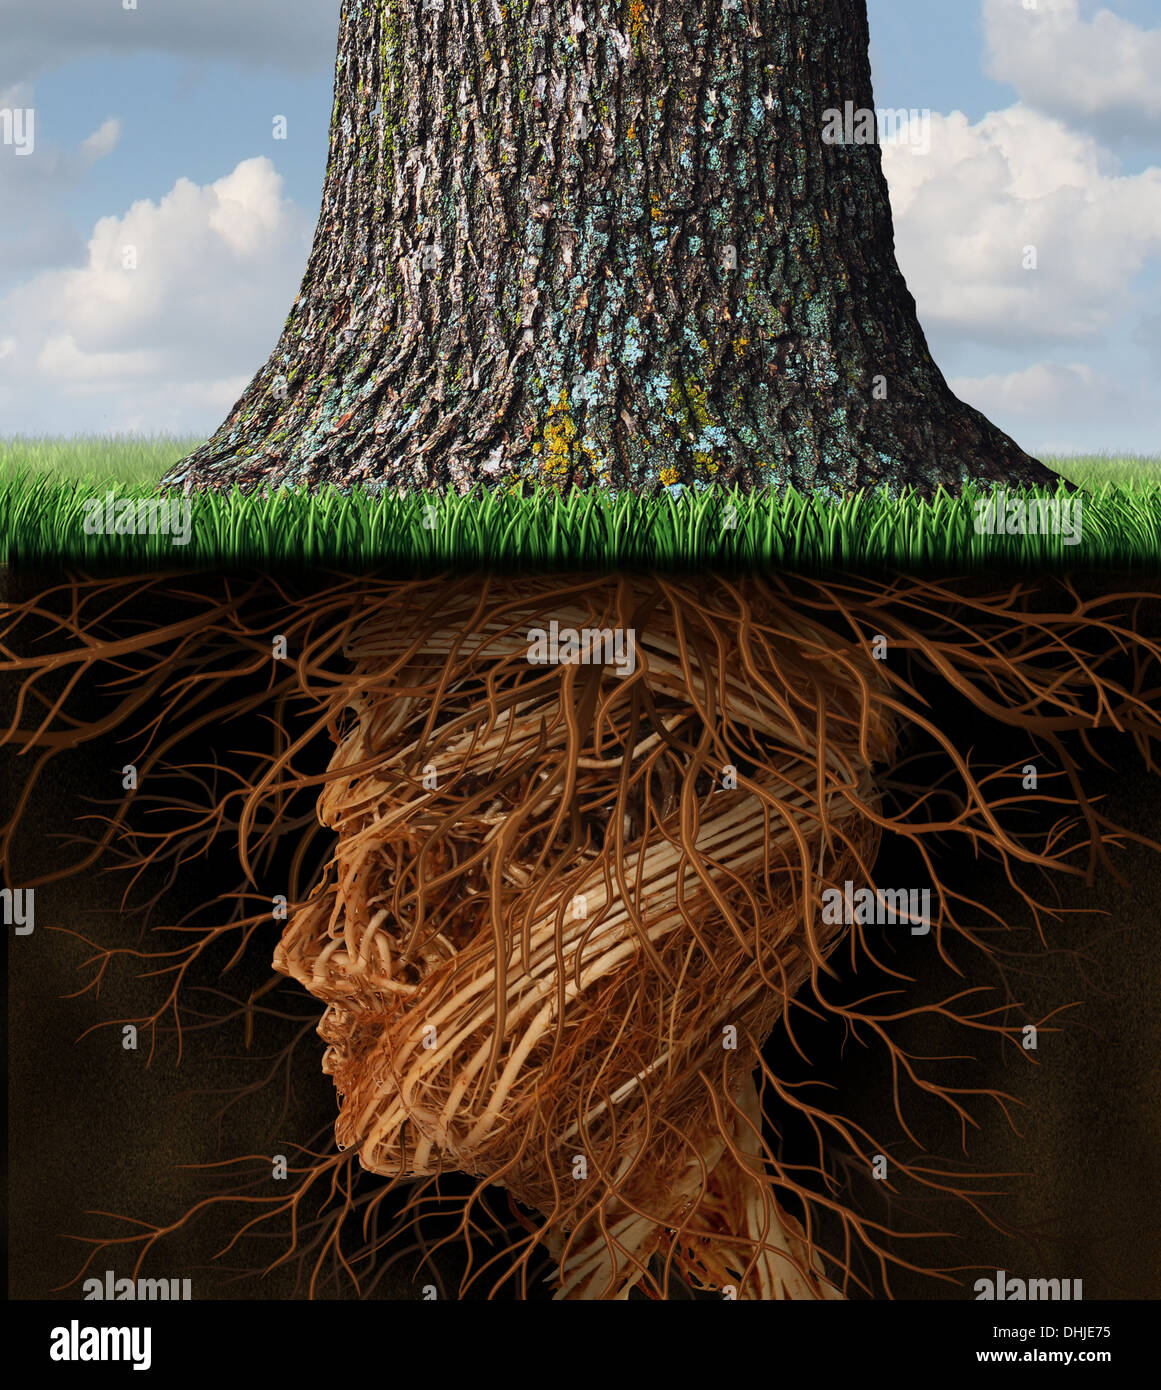 Prendre racine et enracinement et soins de santé entreprise concept avec des racines d'arbre souterrain sous la forme d'une tête humaine comme un grand arbre se développe au-dessus sous la forme d'une icône de la croissance et de la réussite dans le domaine des soins de santé et de richesse. Banque D'Images